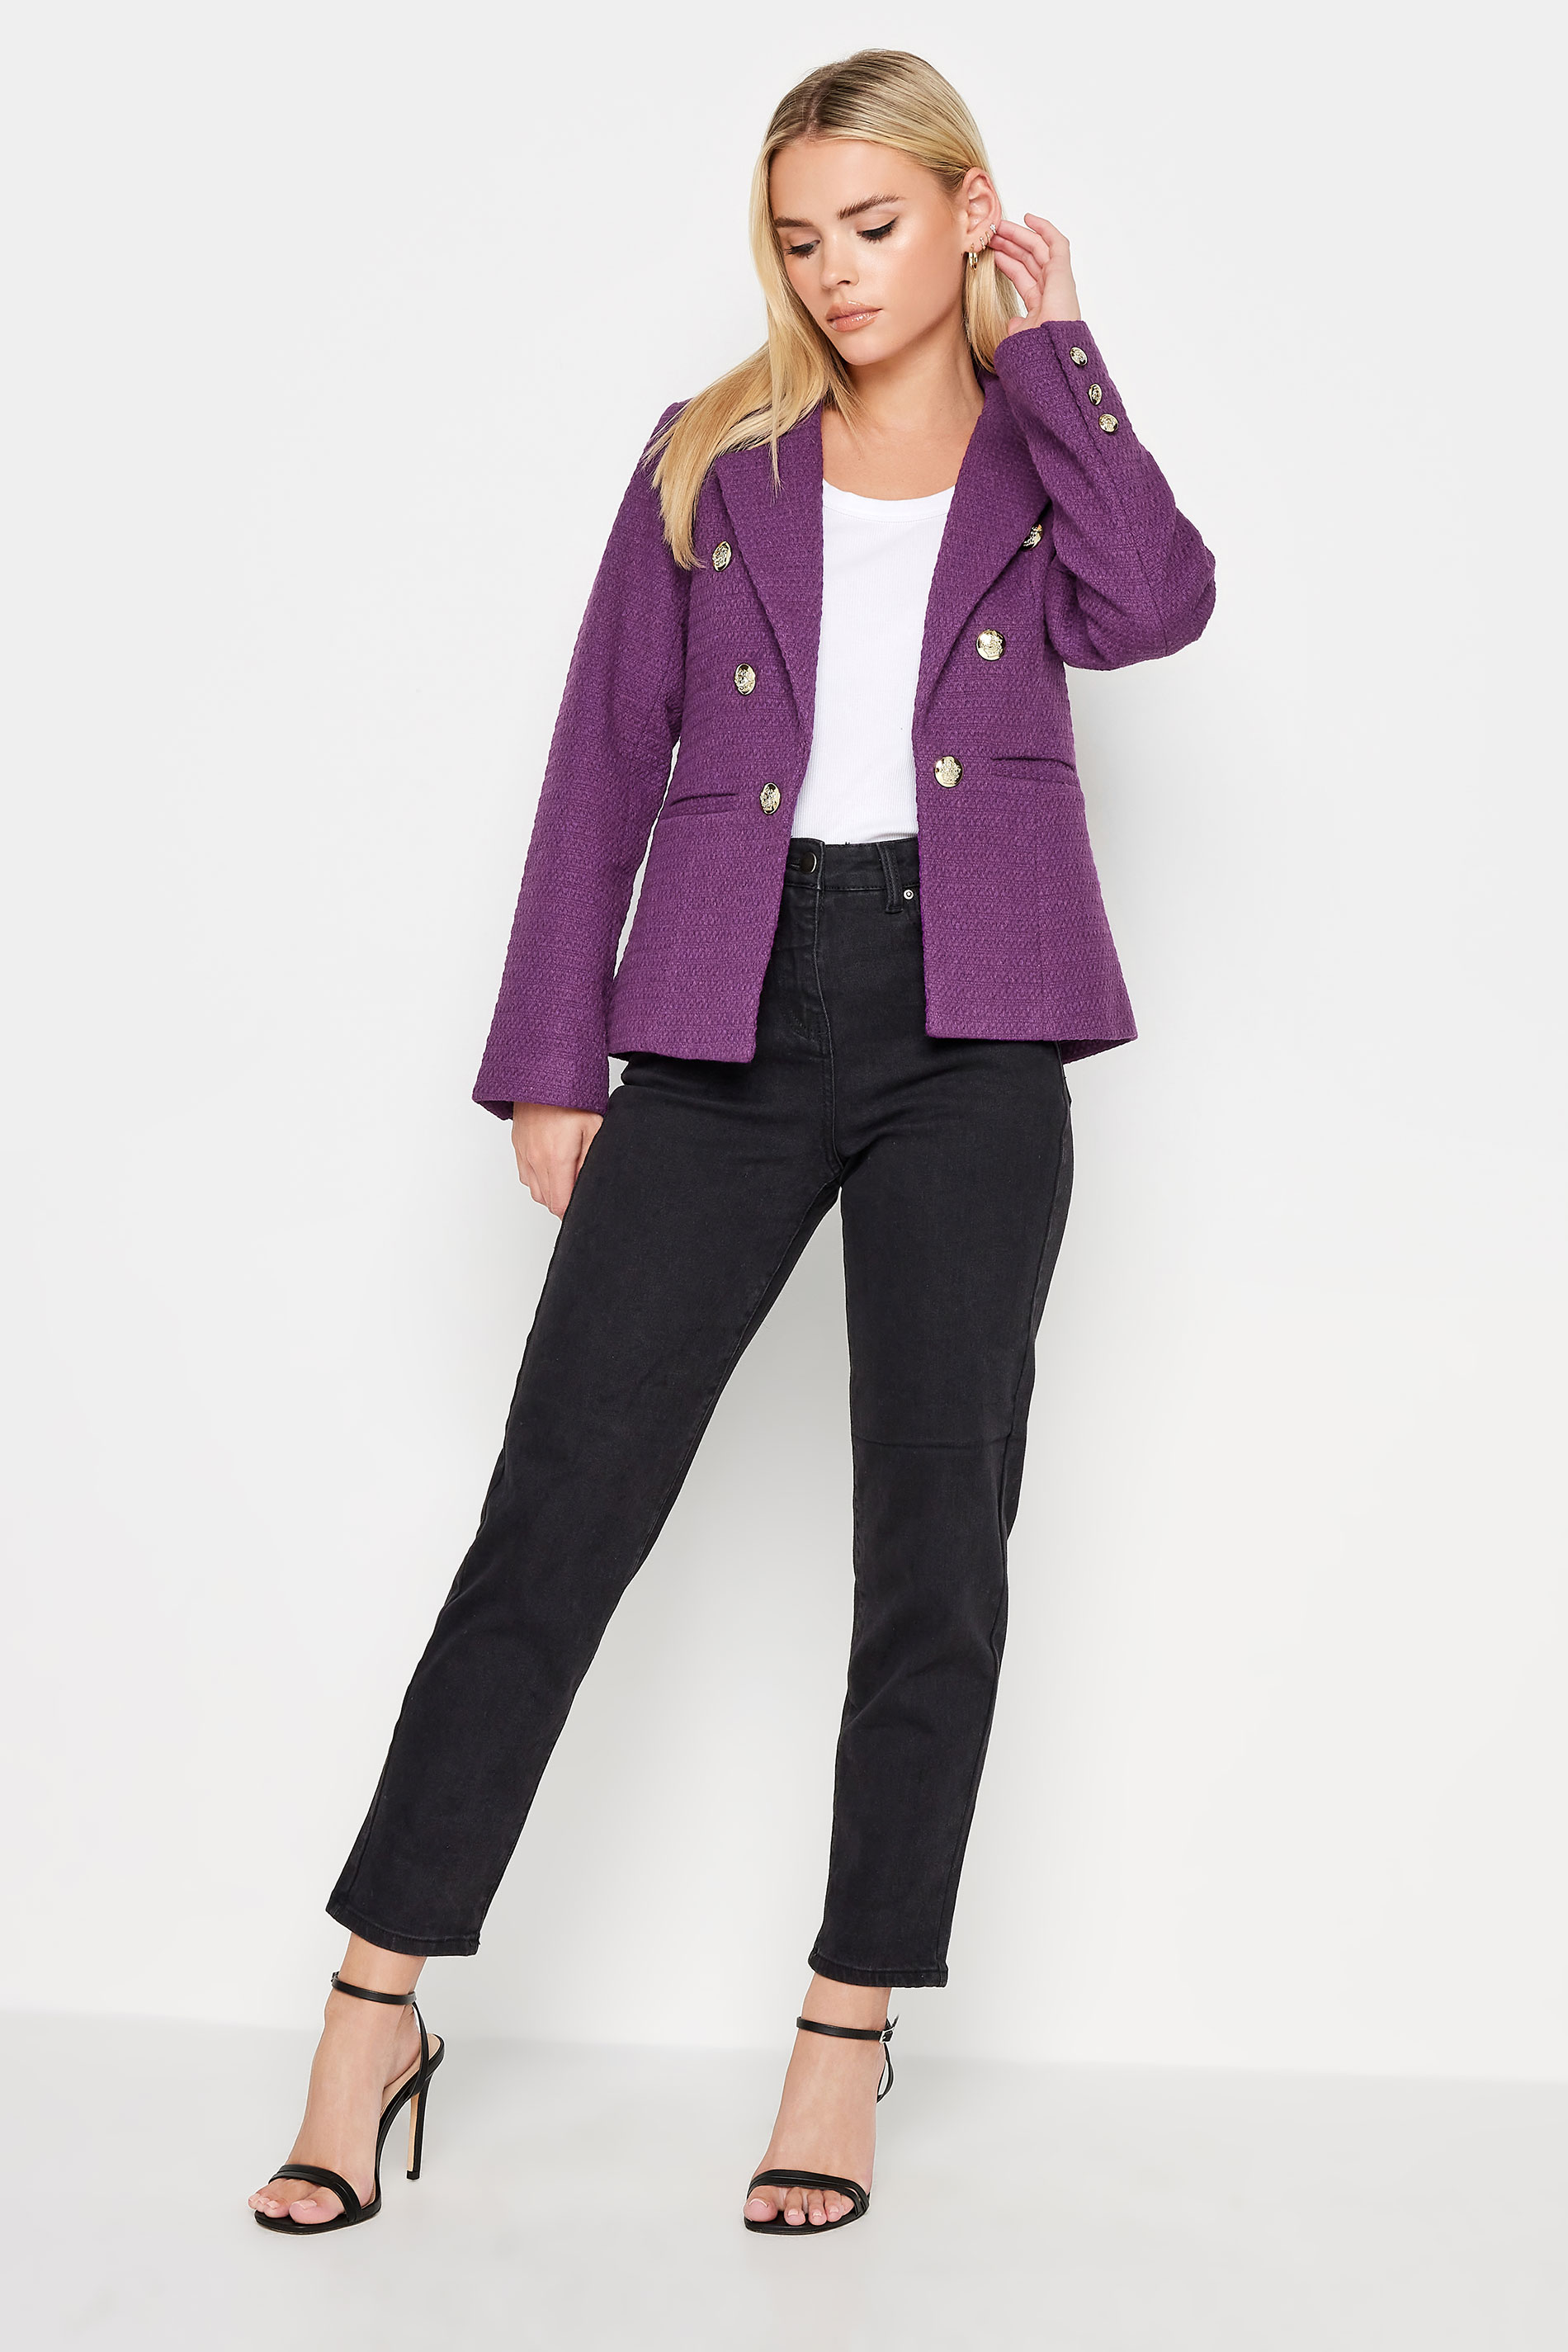 PixieGirl Purple Check Boucle Blazer | PixieGirl  2